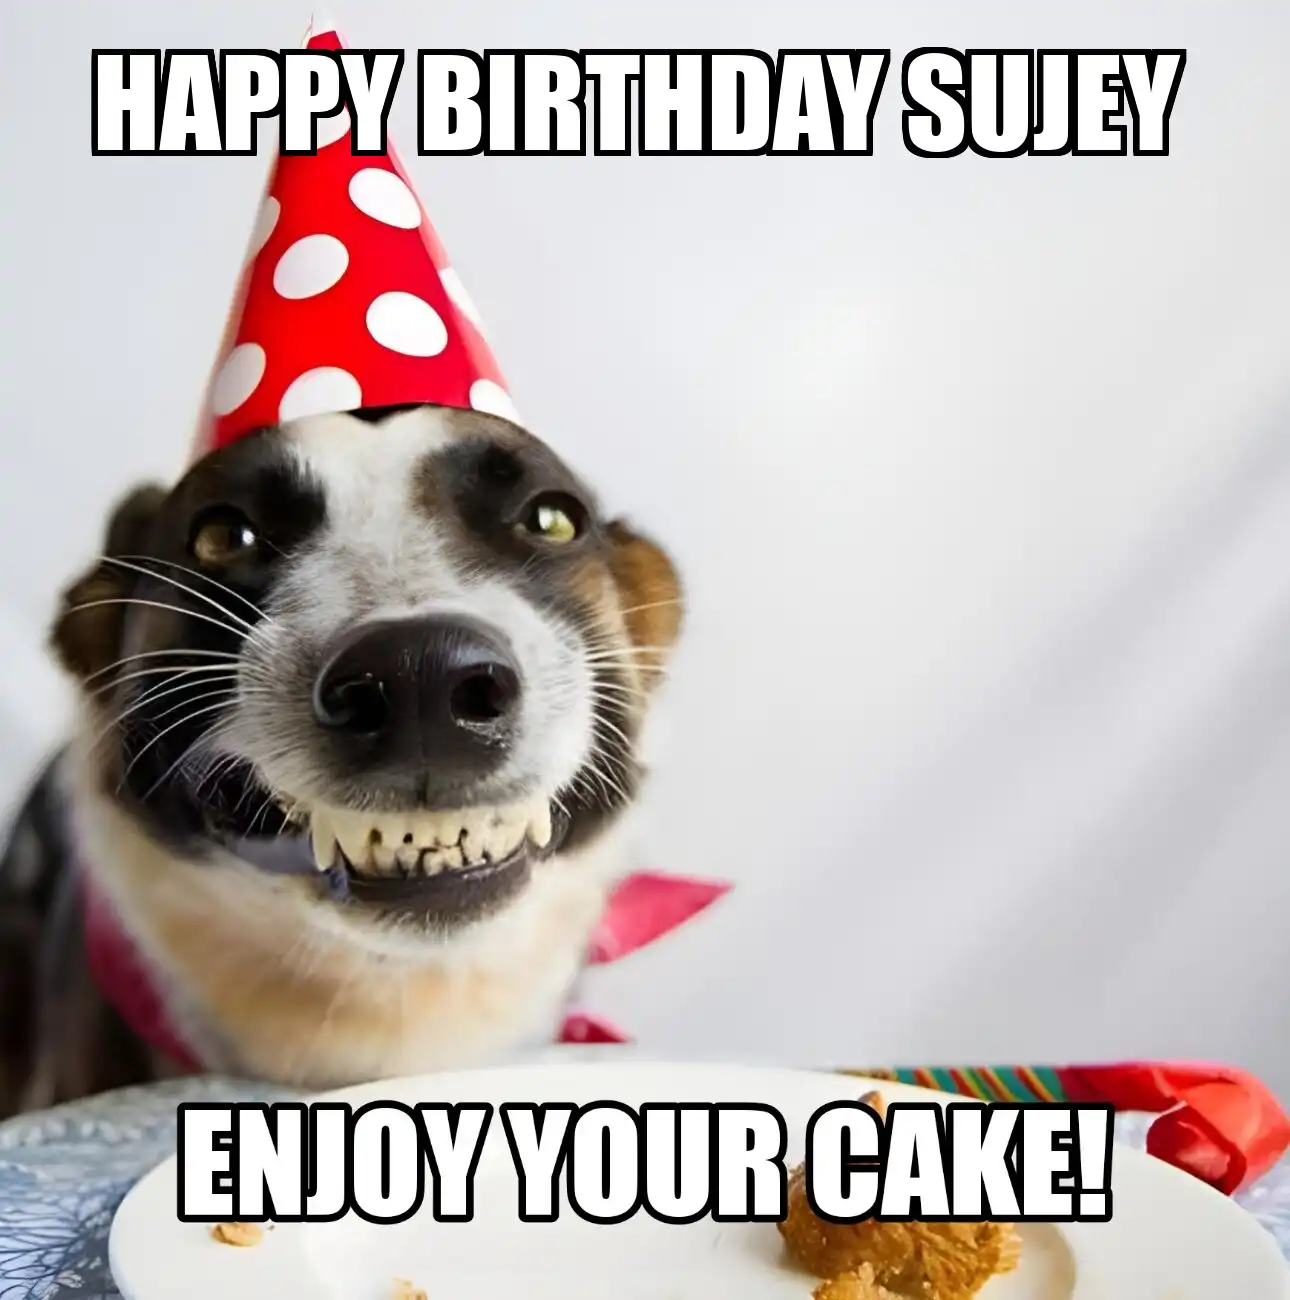 Happy Birthday Sujey Enjoy Your Cake Dog Meme